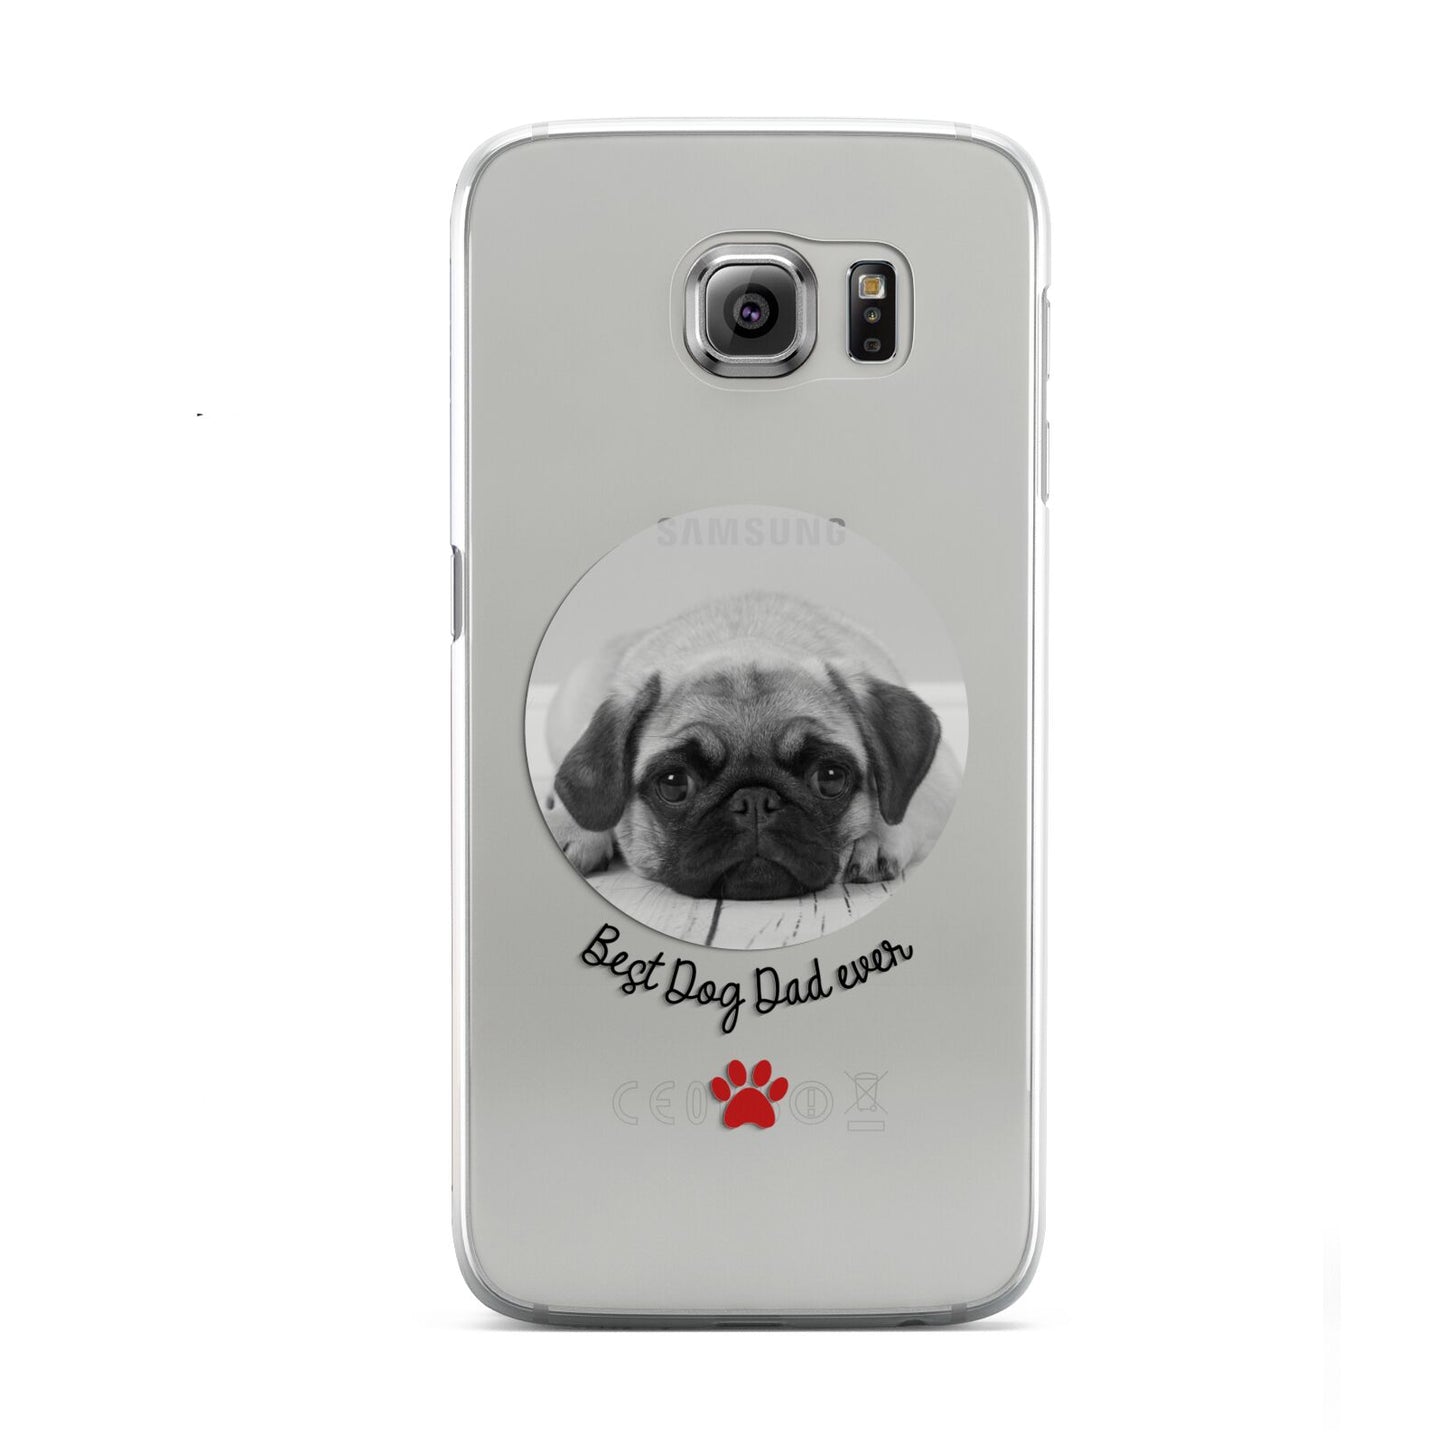 Best Dog Dad Ever Photo Upload Samsung Galaxy S6 Case